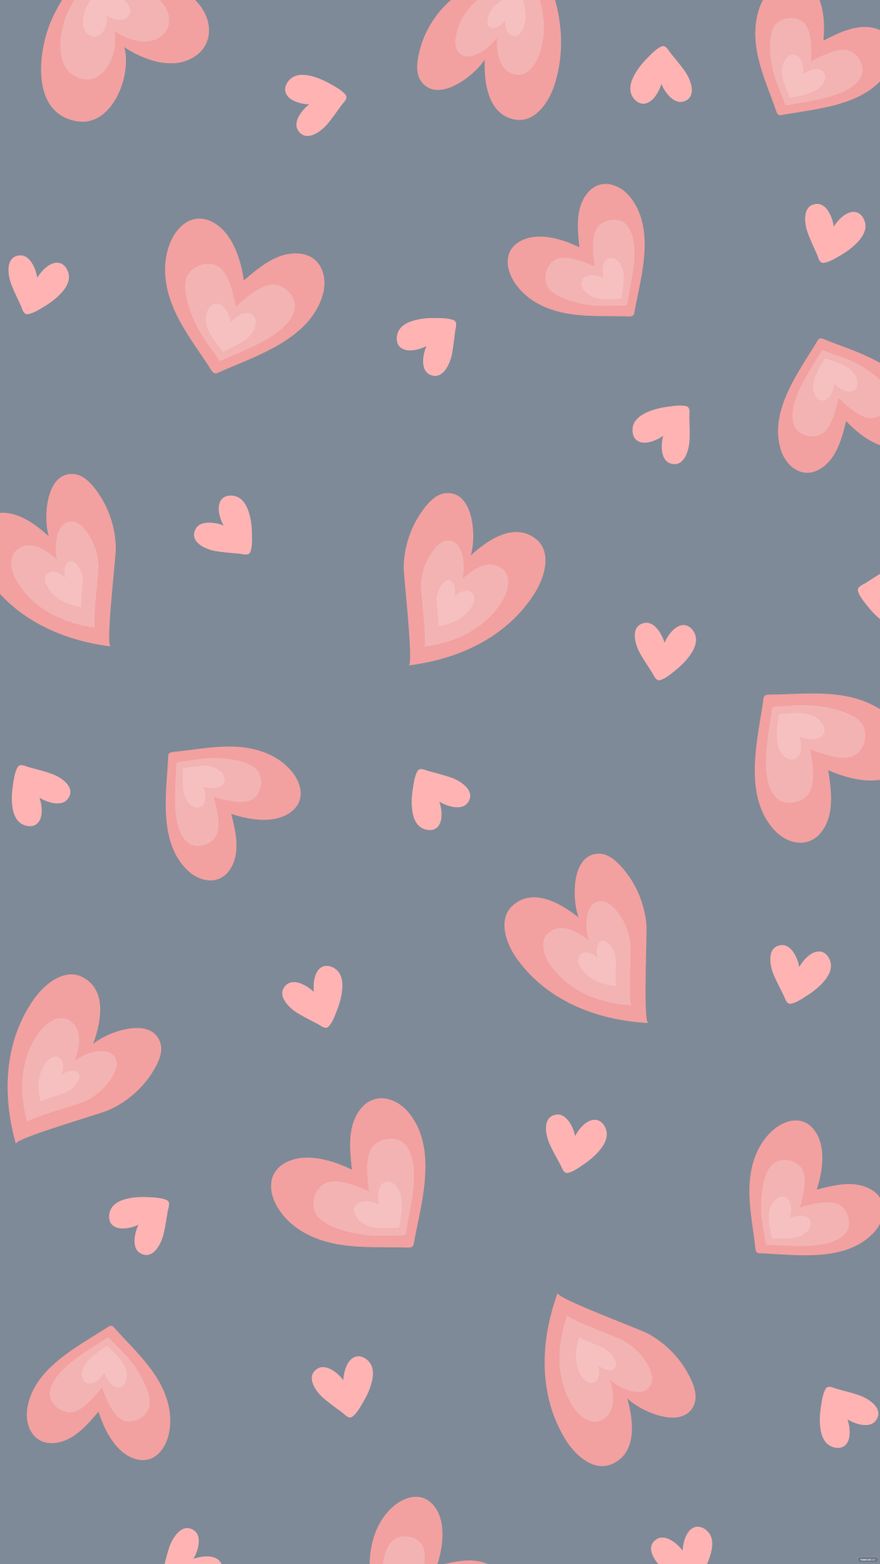 Free Pink Heart Desktop Background - EPS, Illustrator, JPG, SVG |  